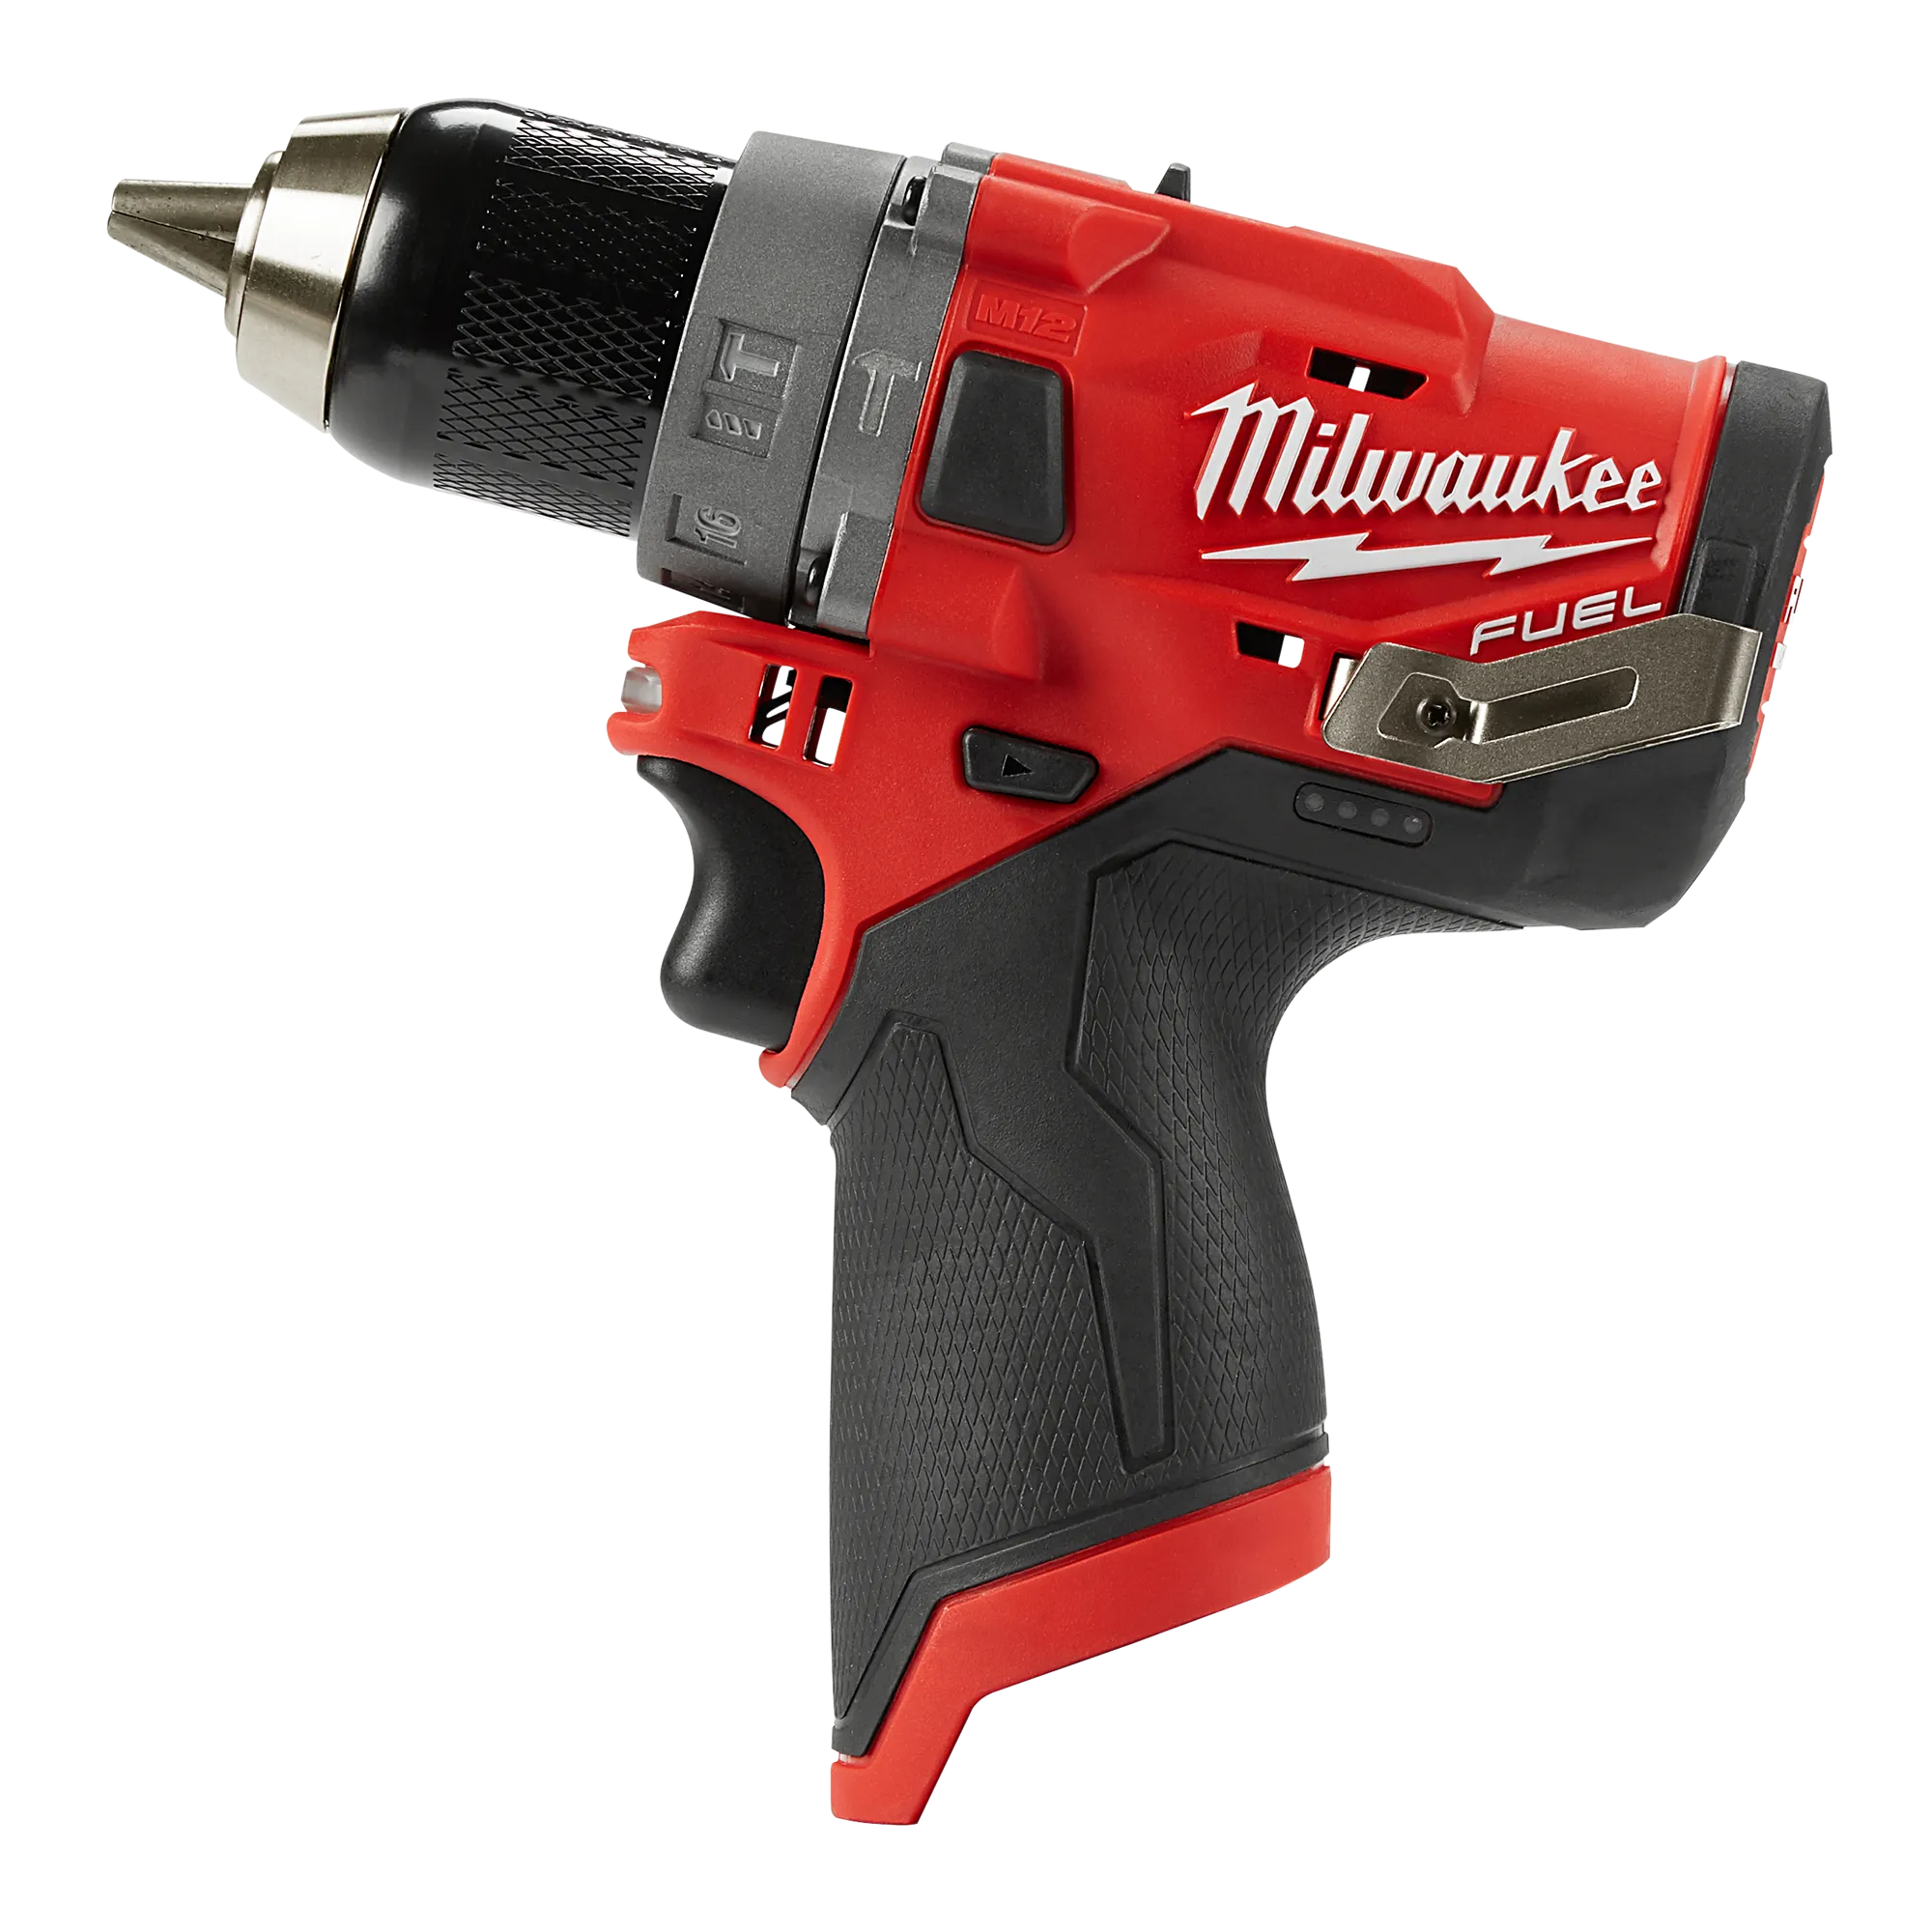 2504-20 - M12 FUEL™ 1/2" Hammer Drill